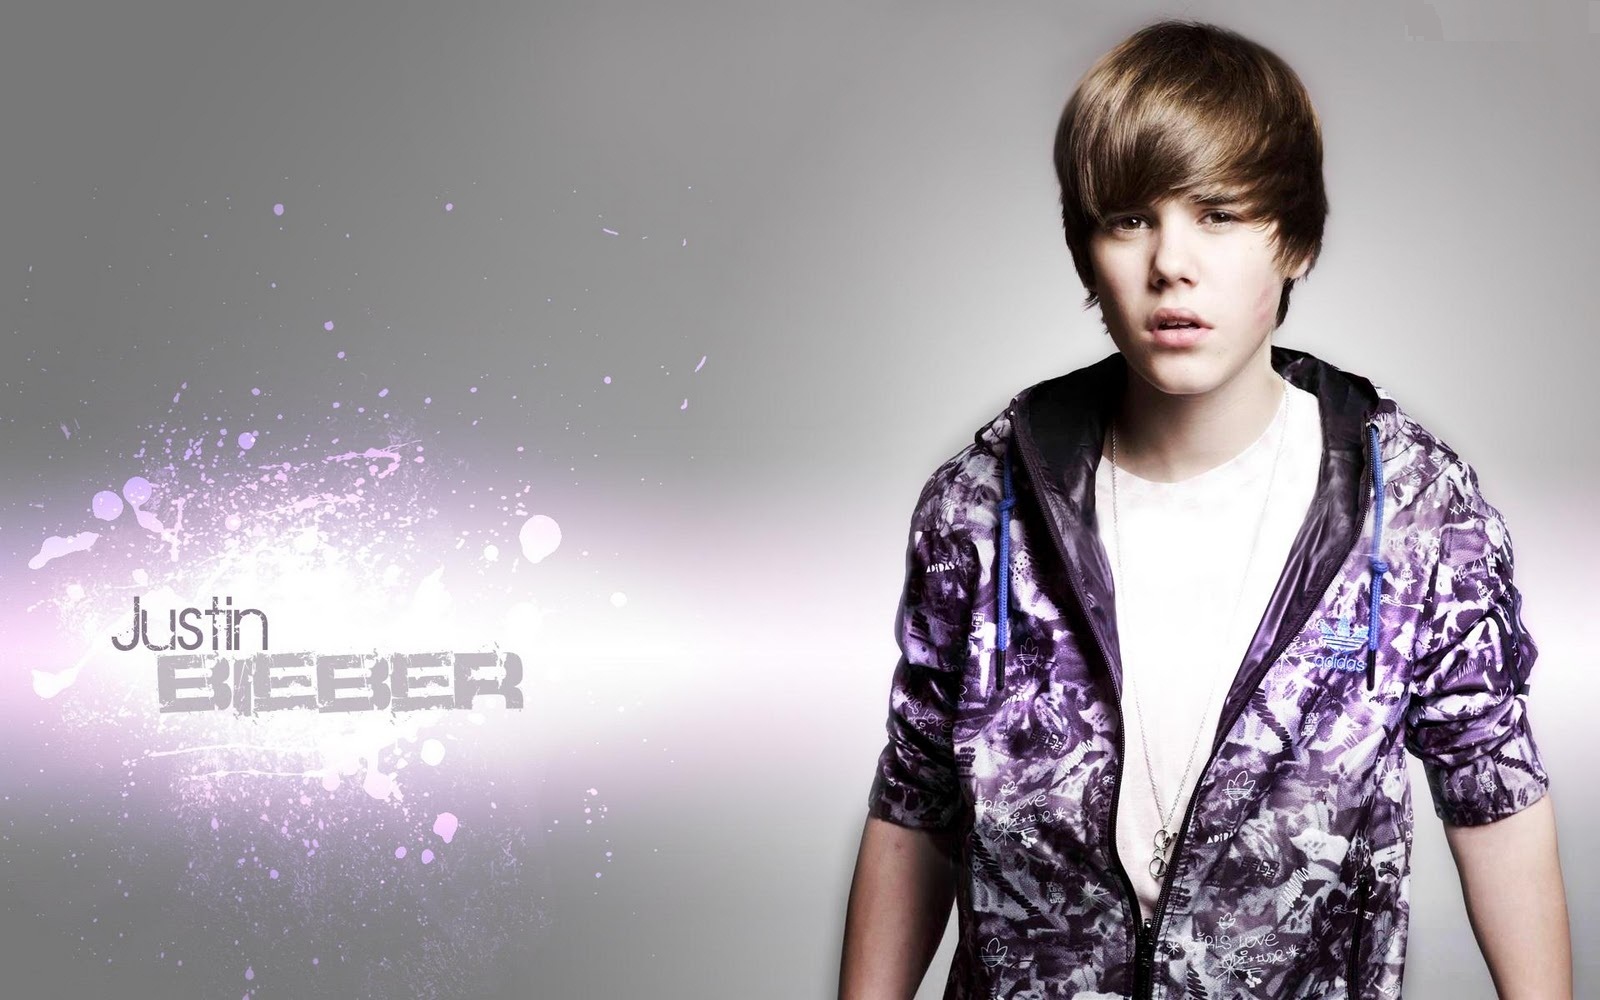 https://blogger.googleusercontent.com/img/b/R29vZ2xl/AVvXsEiQ5XQ-4QEiPCj72c2SGeZ1uKWH1brjbk3swg4XCkijiEyJtqHPMJHHhOFiUemzRsfhTIlJAgdCtB7C2sayh4kzAbSapoUpmMNwQhmAm6QRlPuQksSq1VY8i1bp_VFvNWIrmo5Ek789glM/s1600/Justin-Bieber-New-2012-Wallpapers-04.jpg